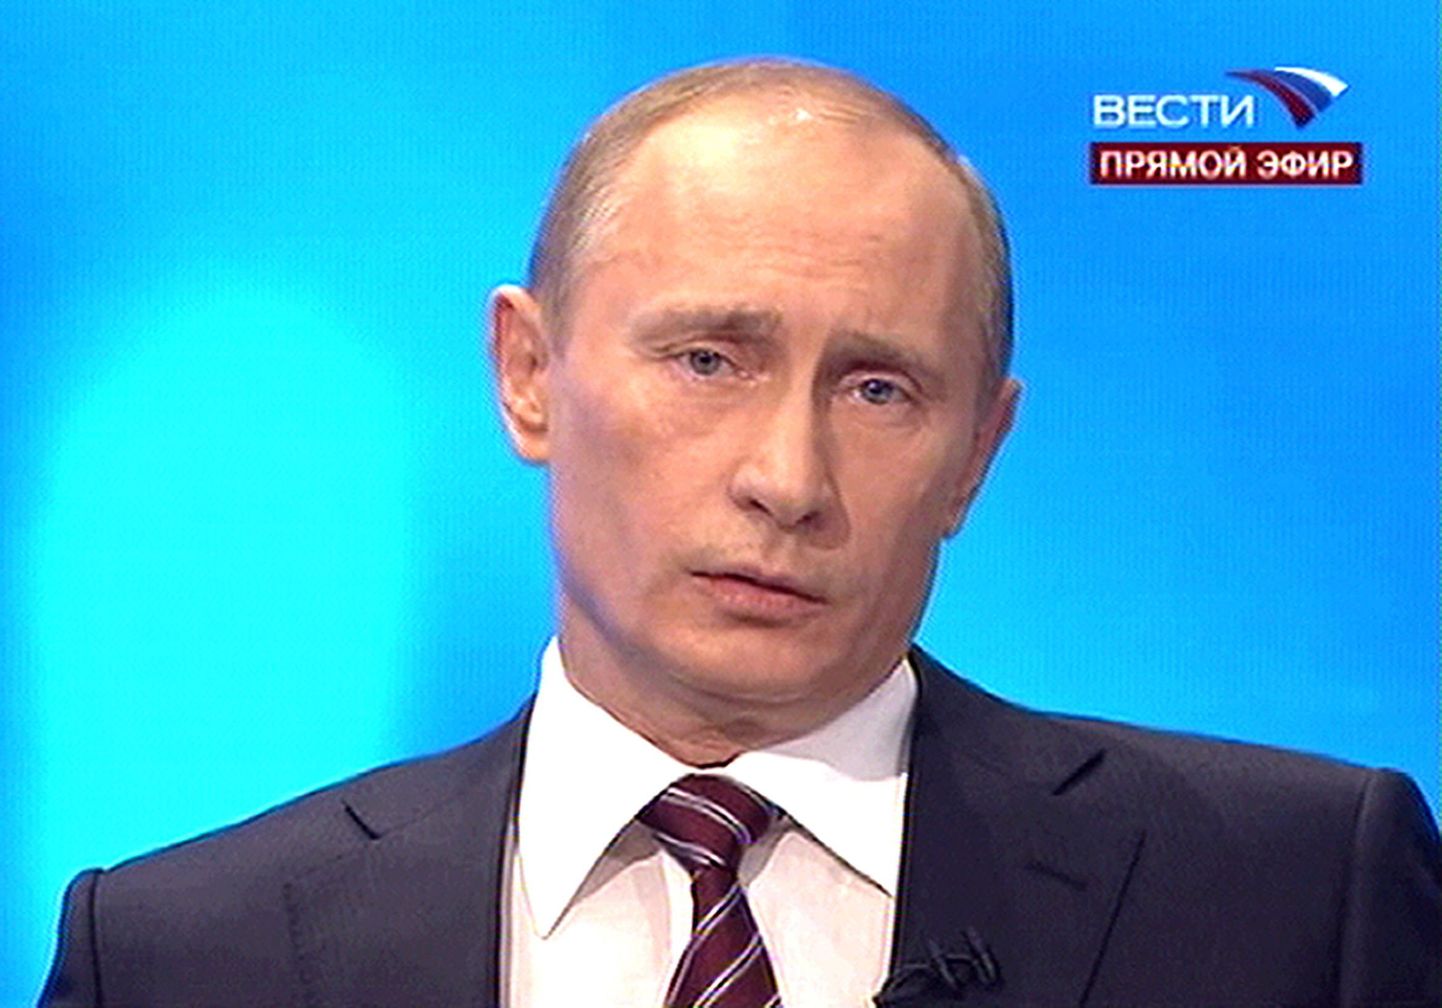 Vladimir Putini «otseliin» 4. detsembril 2008.